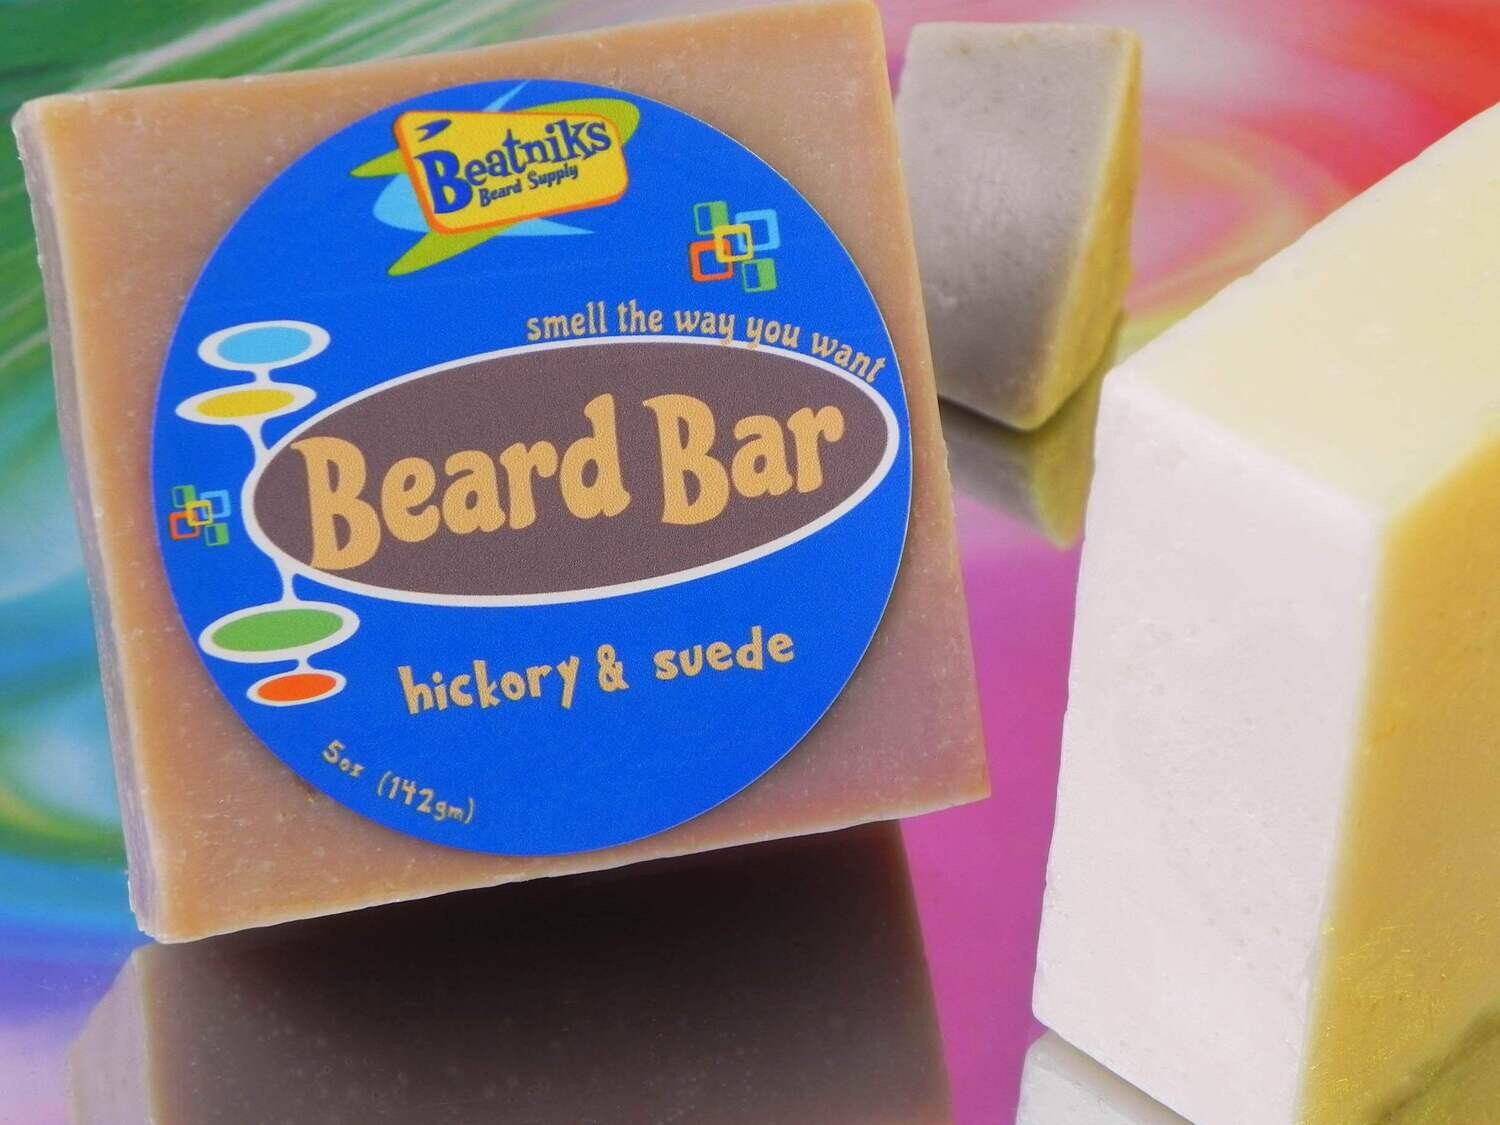 HICKORY & SUEDE | Beard Bar